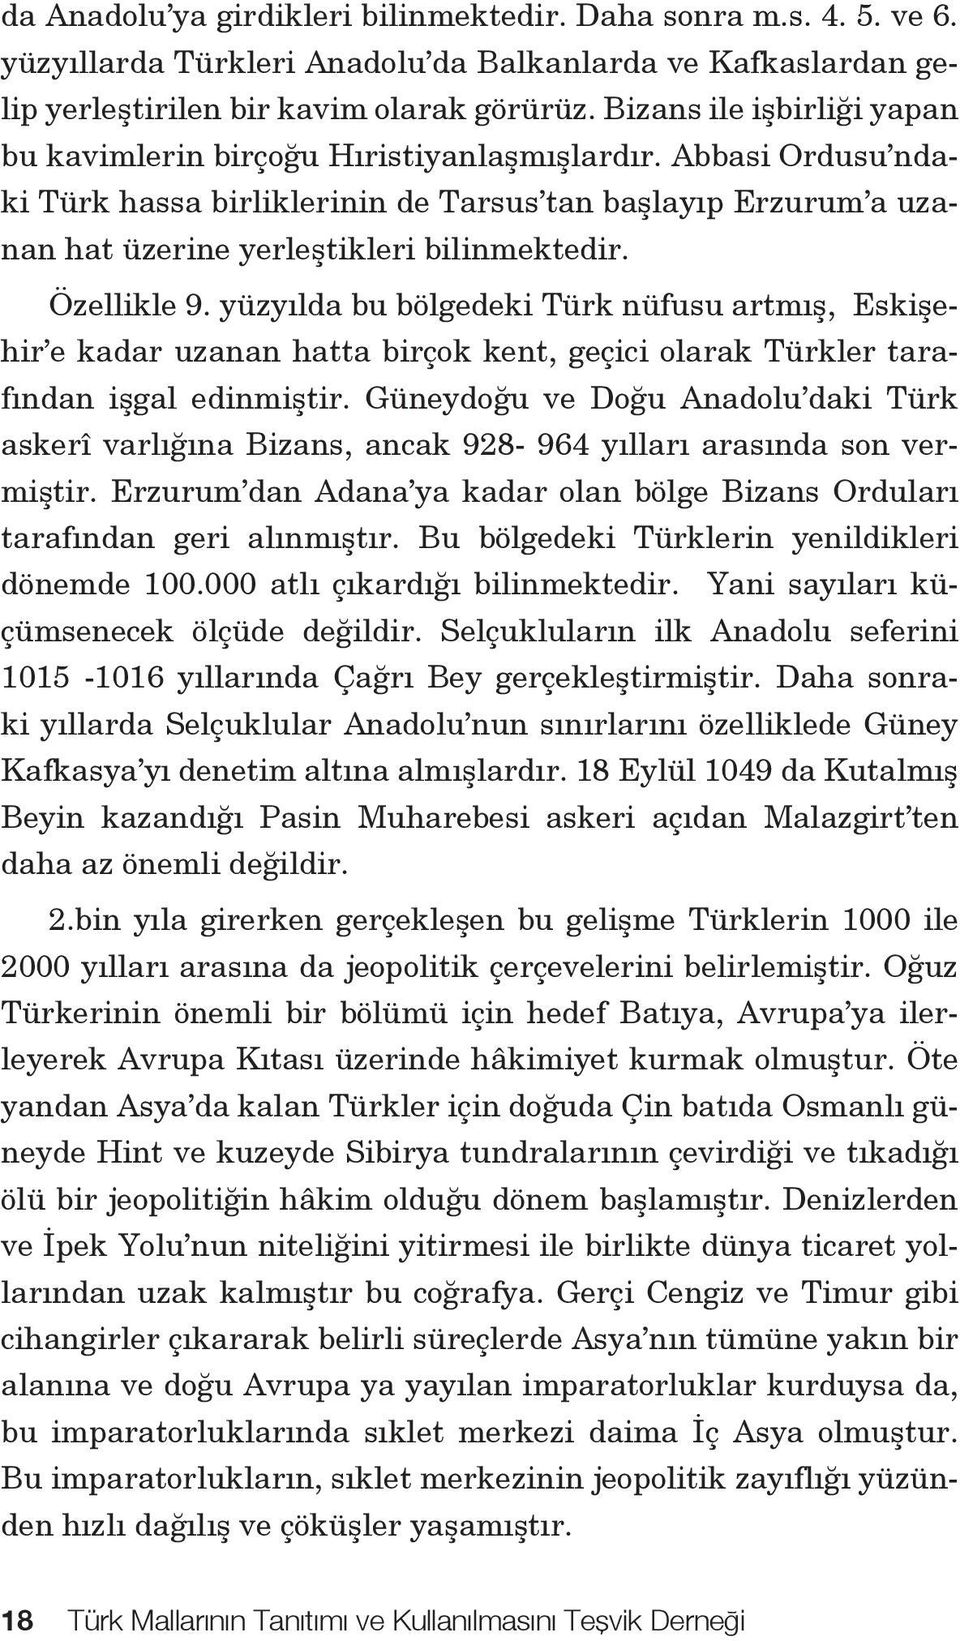 Özellikle 9. yüzyılda bu bölgedeki Türk nüfusu artmış, Eskişehir e kadar uzanan hatta birçok kent, geçici olarak Türkler tarafından işgal edinmiştir.